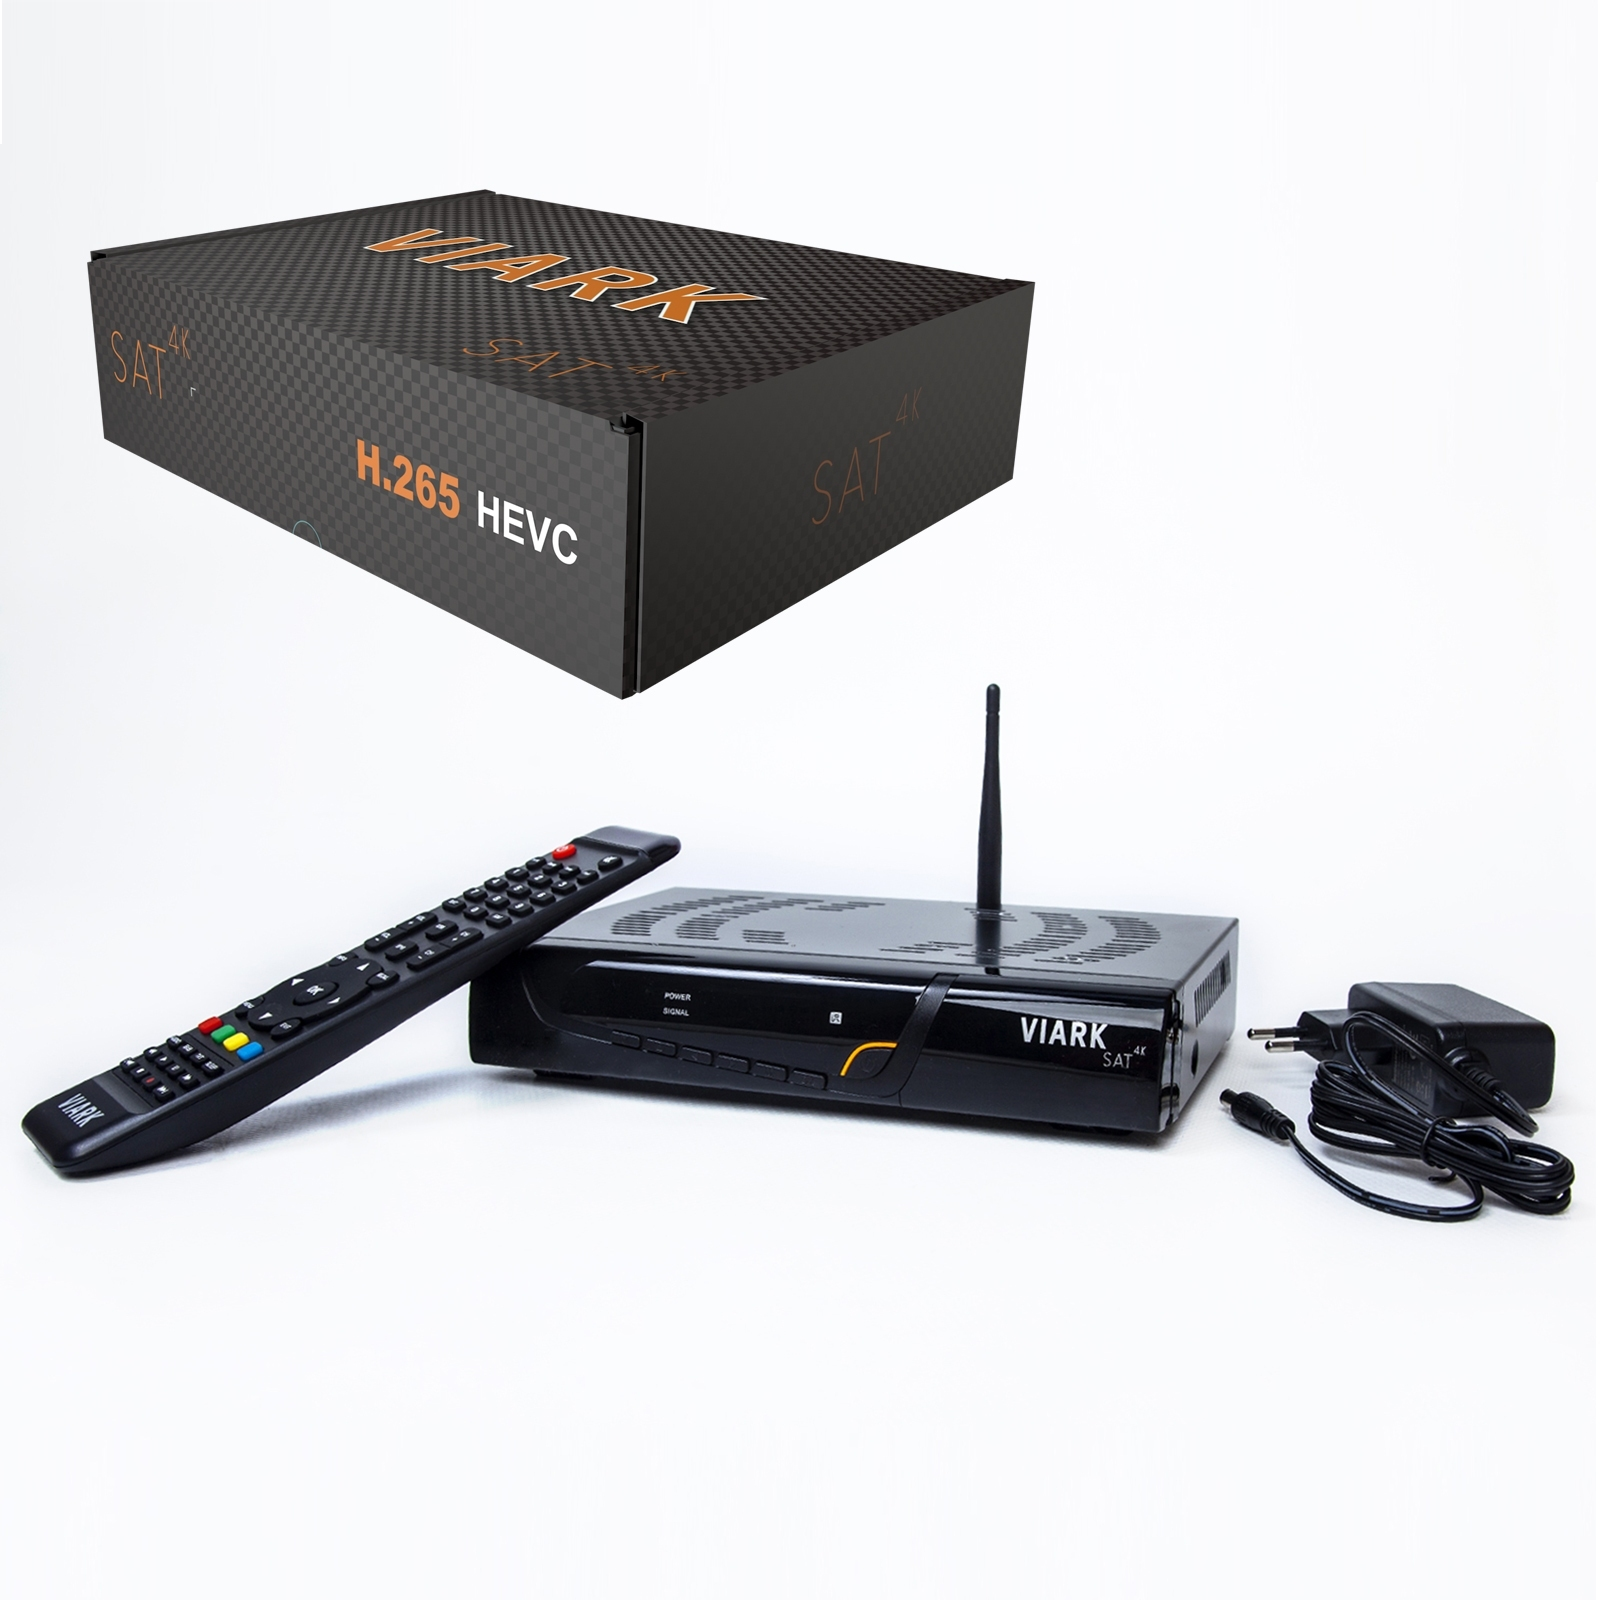 VIARK SAT 4K Sat-Receiver (HDTV, schwarz)